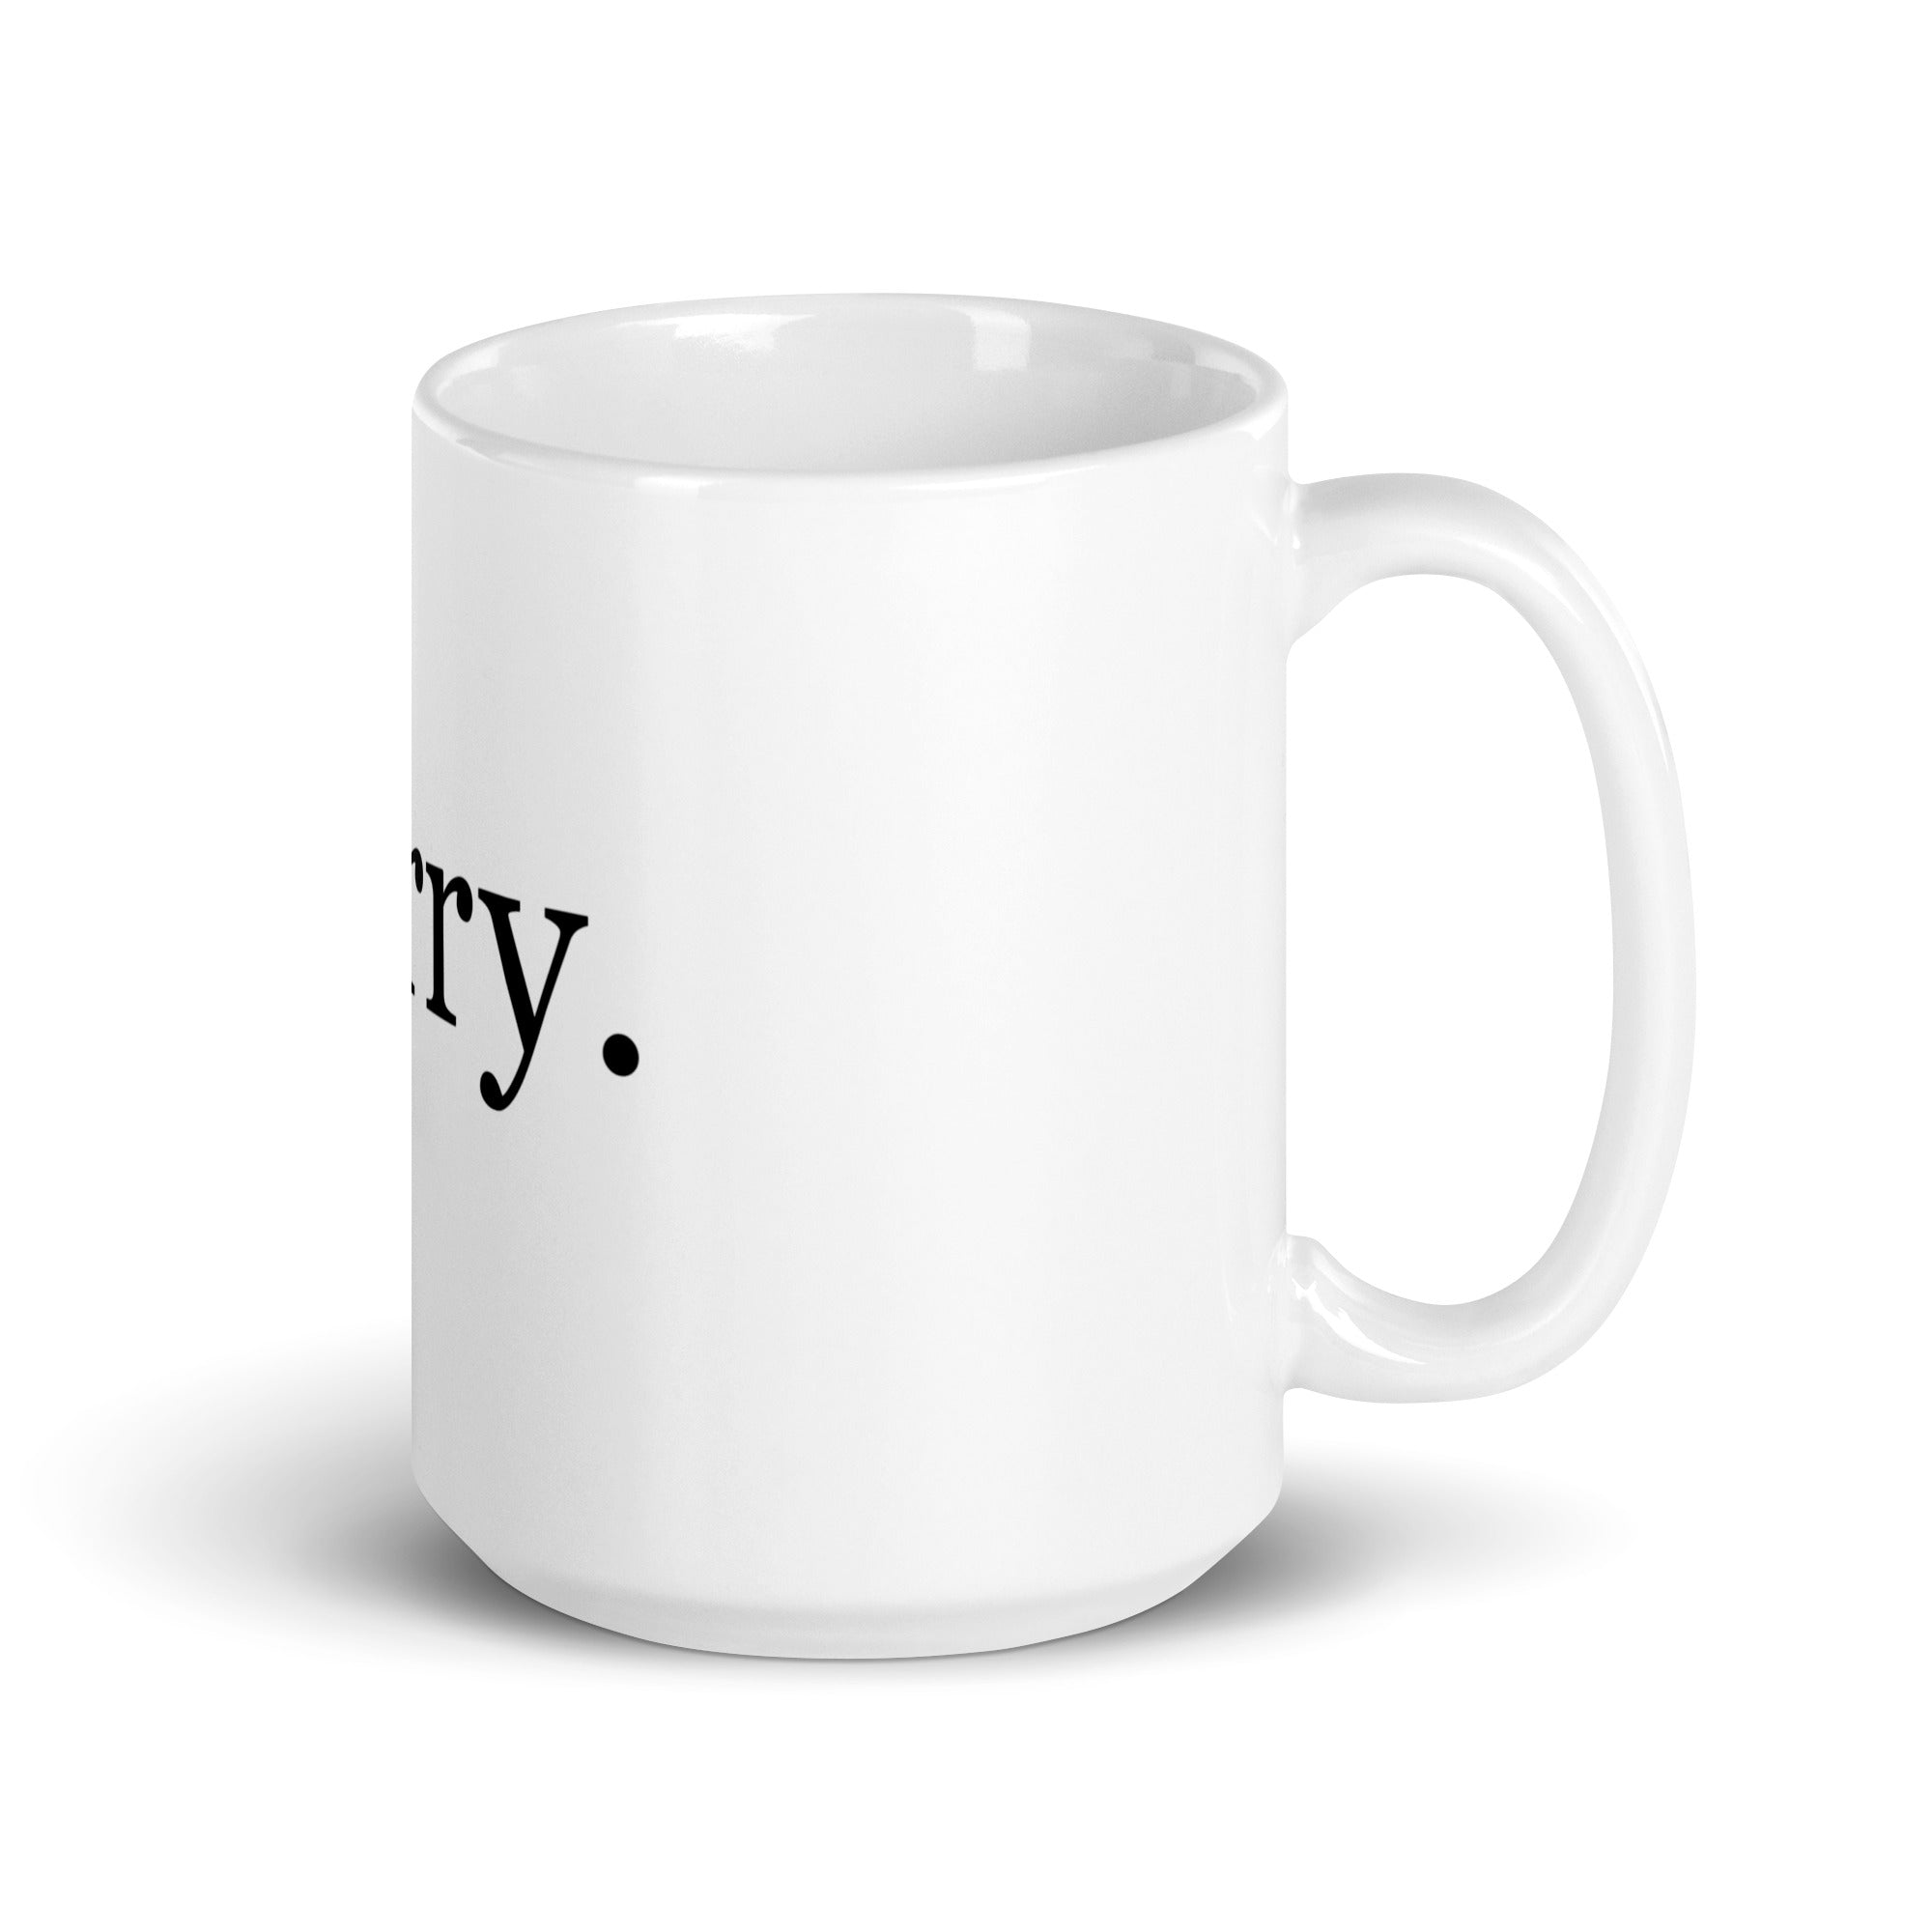 Merry White Coffee Mug 15oz